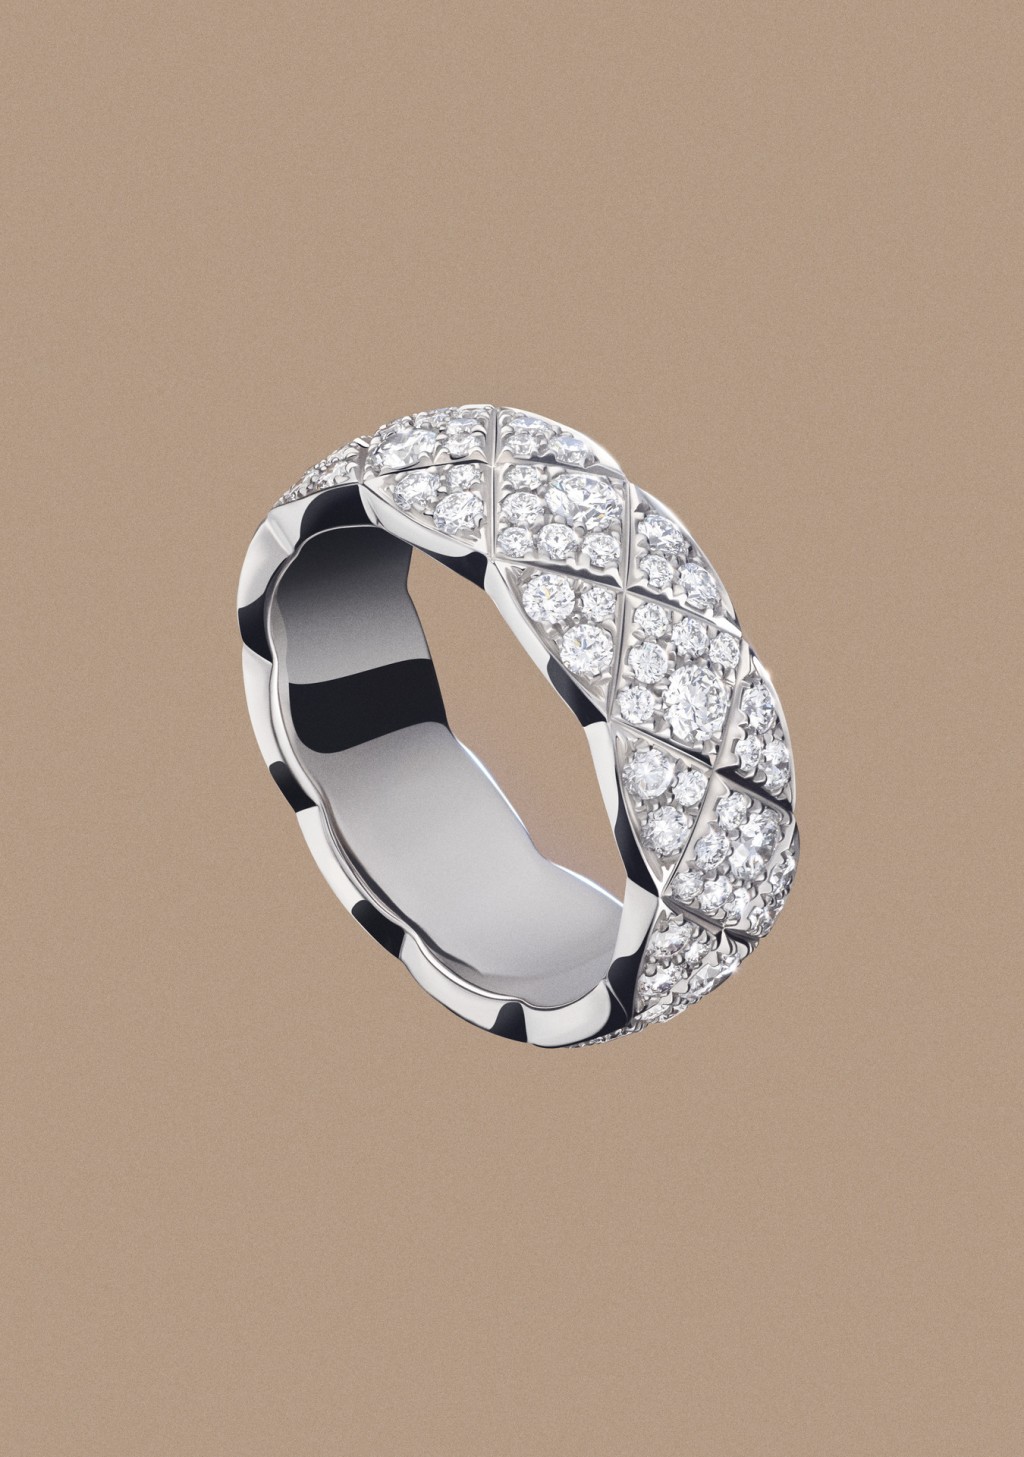 白金鑽石指環/$108,200，以雪花式鑲嵌不同大小的鑽石，營造恍如雪花反射陽光的耀目視效。